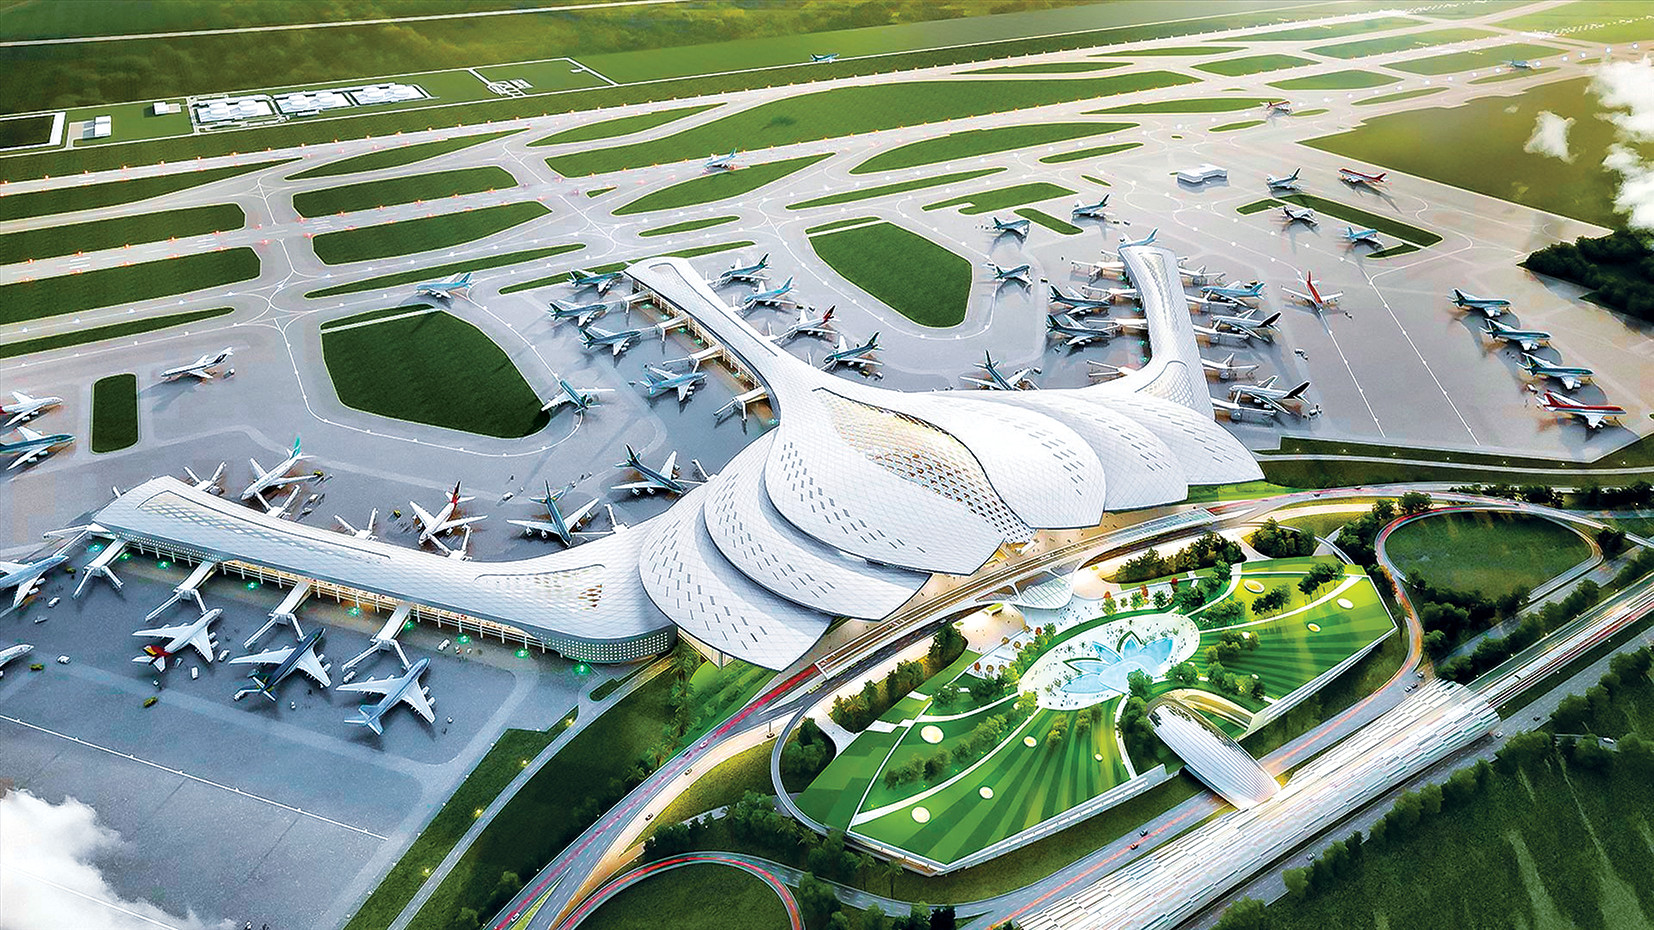 Sân bay Long Thành: Sân bay Long Thành sắp sửa hoàn thiện và đón tiếp những khách hàng đến và đi từ khắp nơi trên thế giới. Đây là một cơ hội tuyệt vời để tìm hiểu về kiến trúc hiện đại cùng các thiết bị vận hành tiên tiến. Đến tham quan và trải nghiệm sân bay Long Thành, bạn sẽ được khám phá những điều thú vị và đột phá trong hoạt động của một sân bay hiện đại.